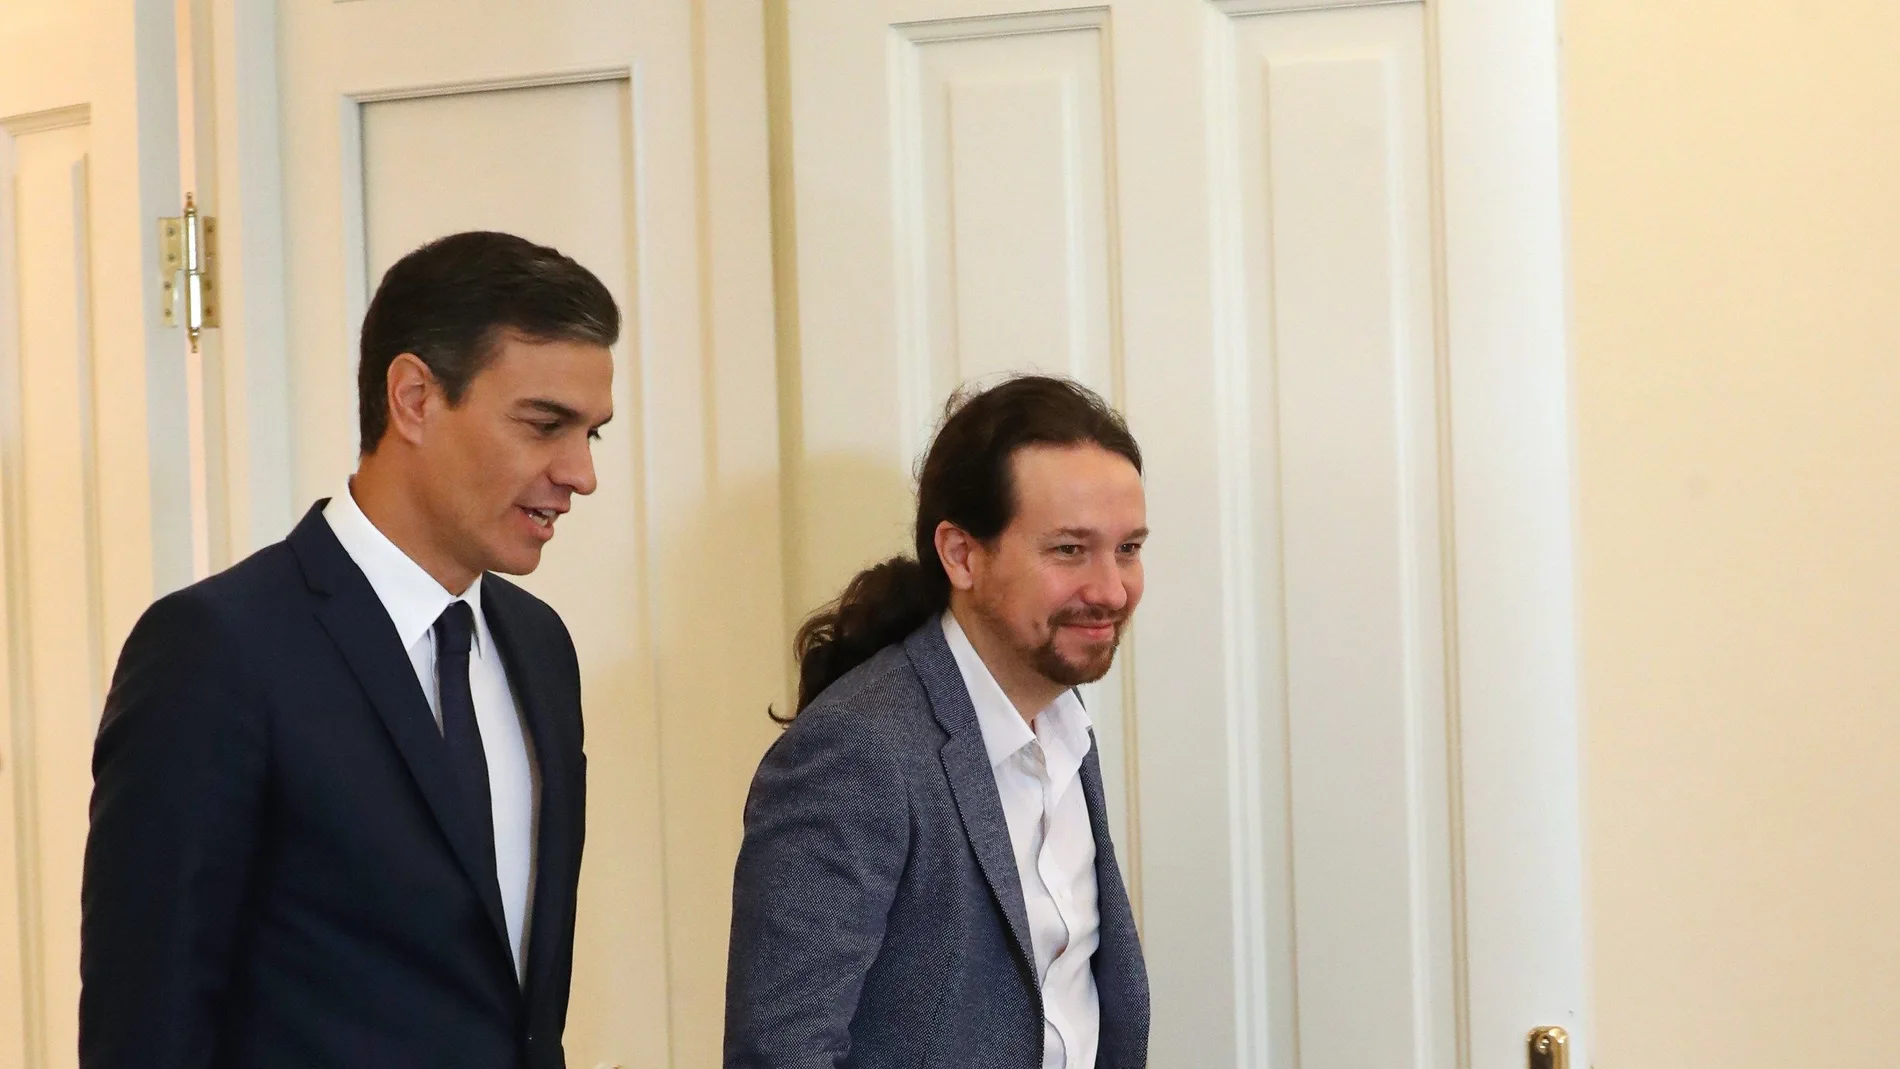 El presidente del Gobierno, Pedro Sánchez, y el secretario general de Podemos, Pablo Iglesias